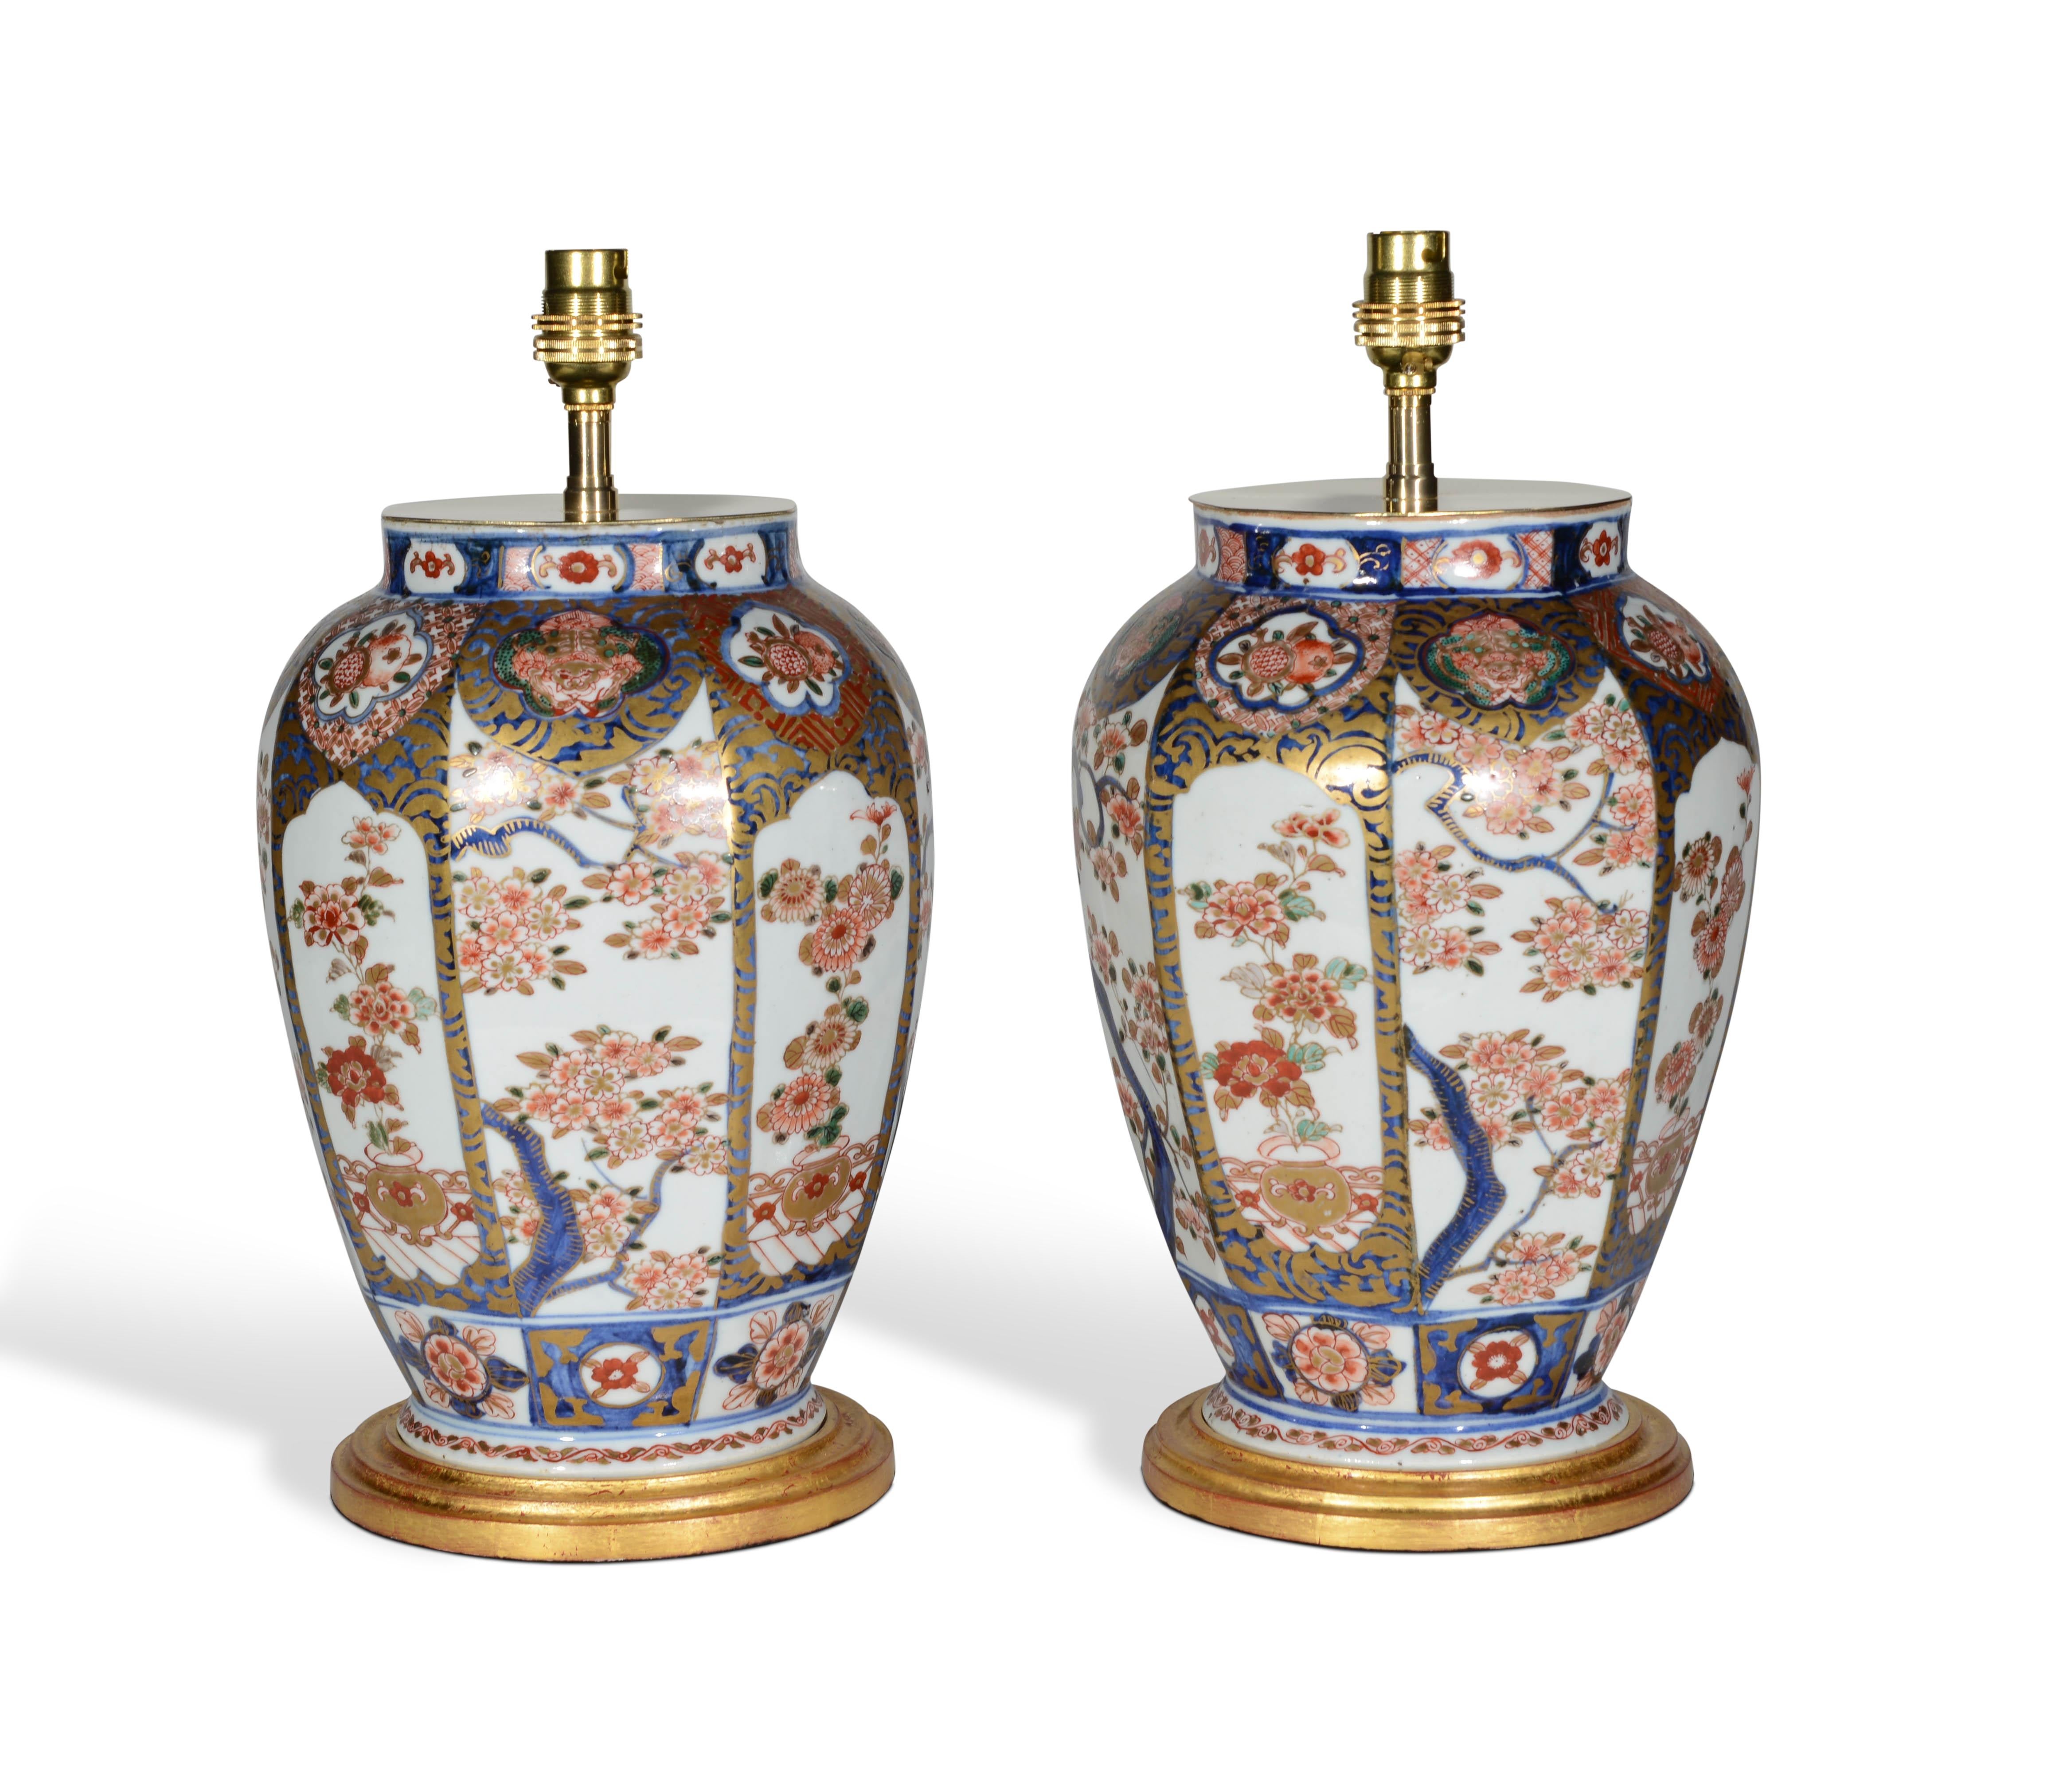 Une belle paire de petits vases japonais du milieu du XIXe siècle, décorés dans la palette typique d'Imari de rouge de fer et de bleus sur un fond essentiellement blanc avec des rehauts dorés, chaque panneau étant particulièrement finement peint de